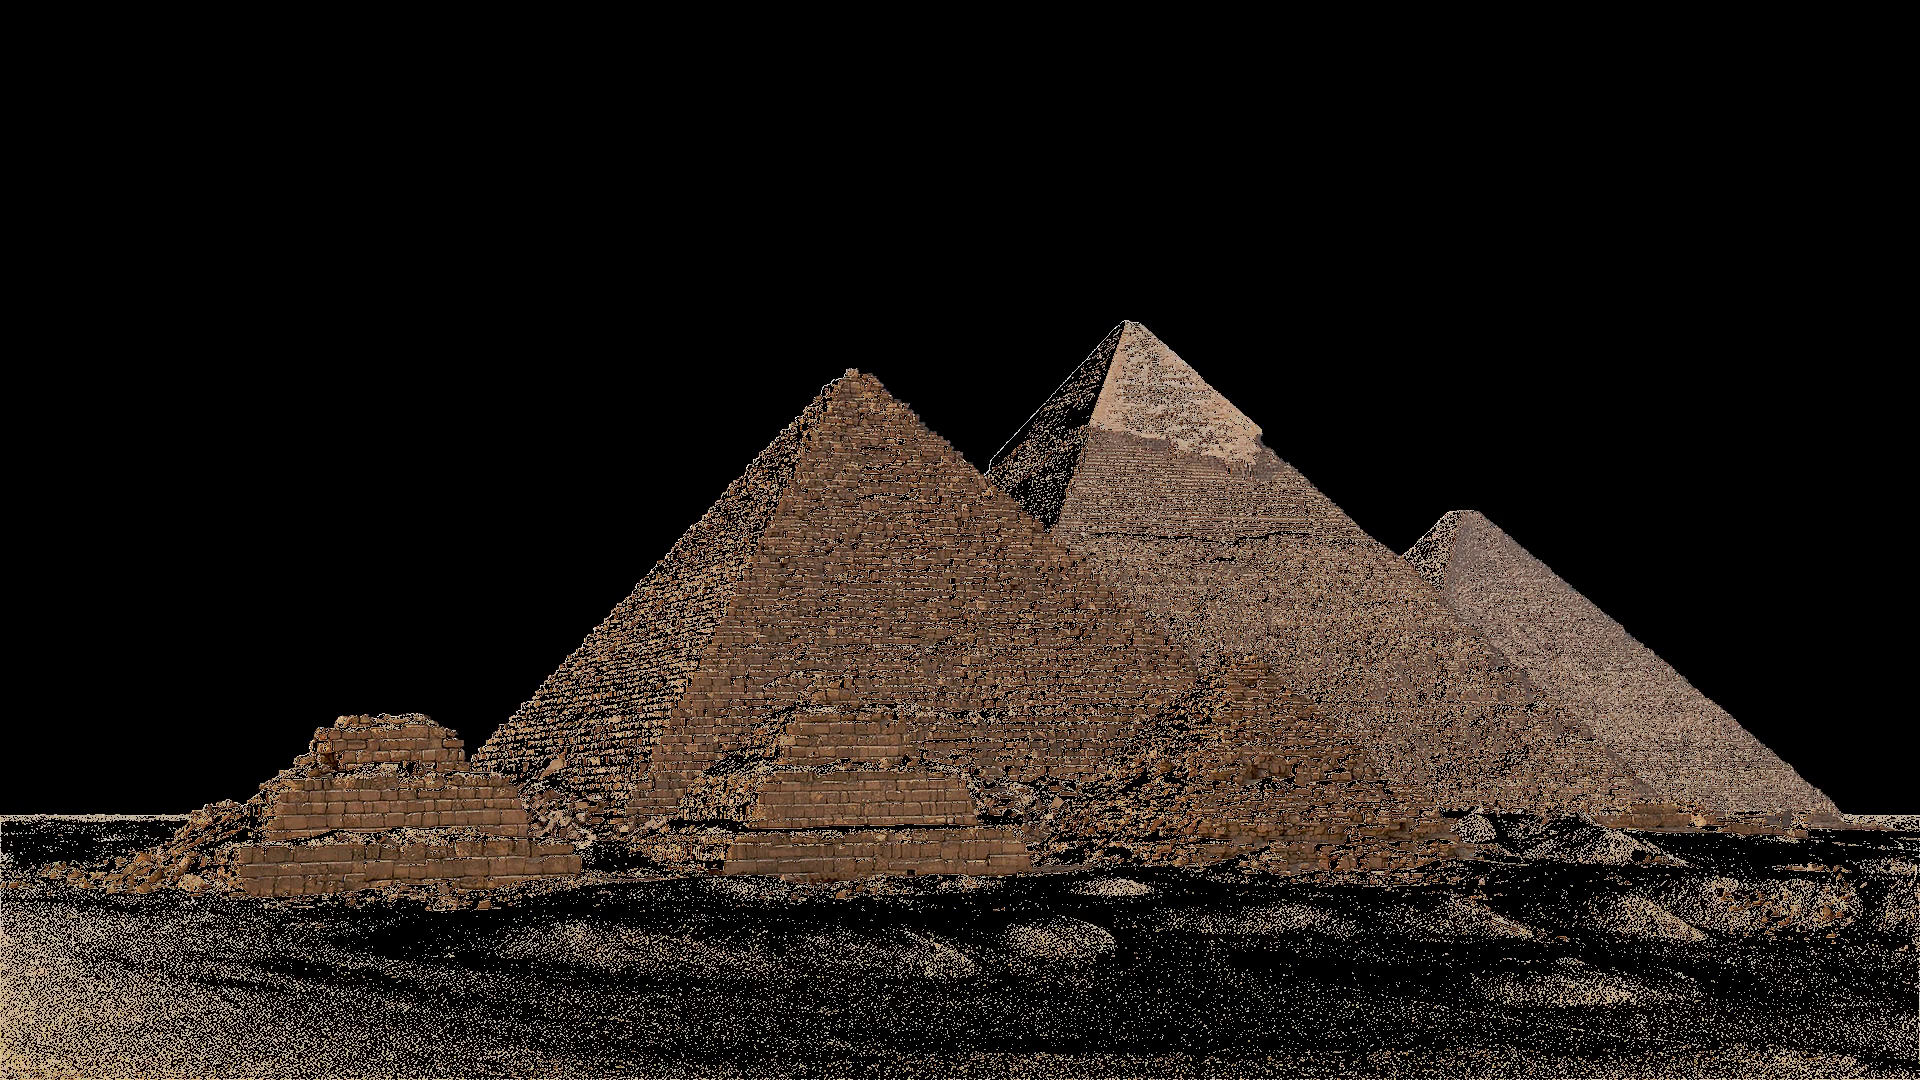 Pyramids Of Giza Drawing at GetDrawings | Free download